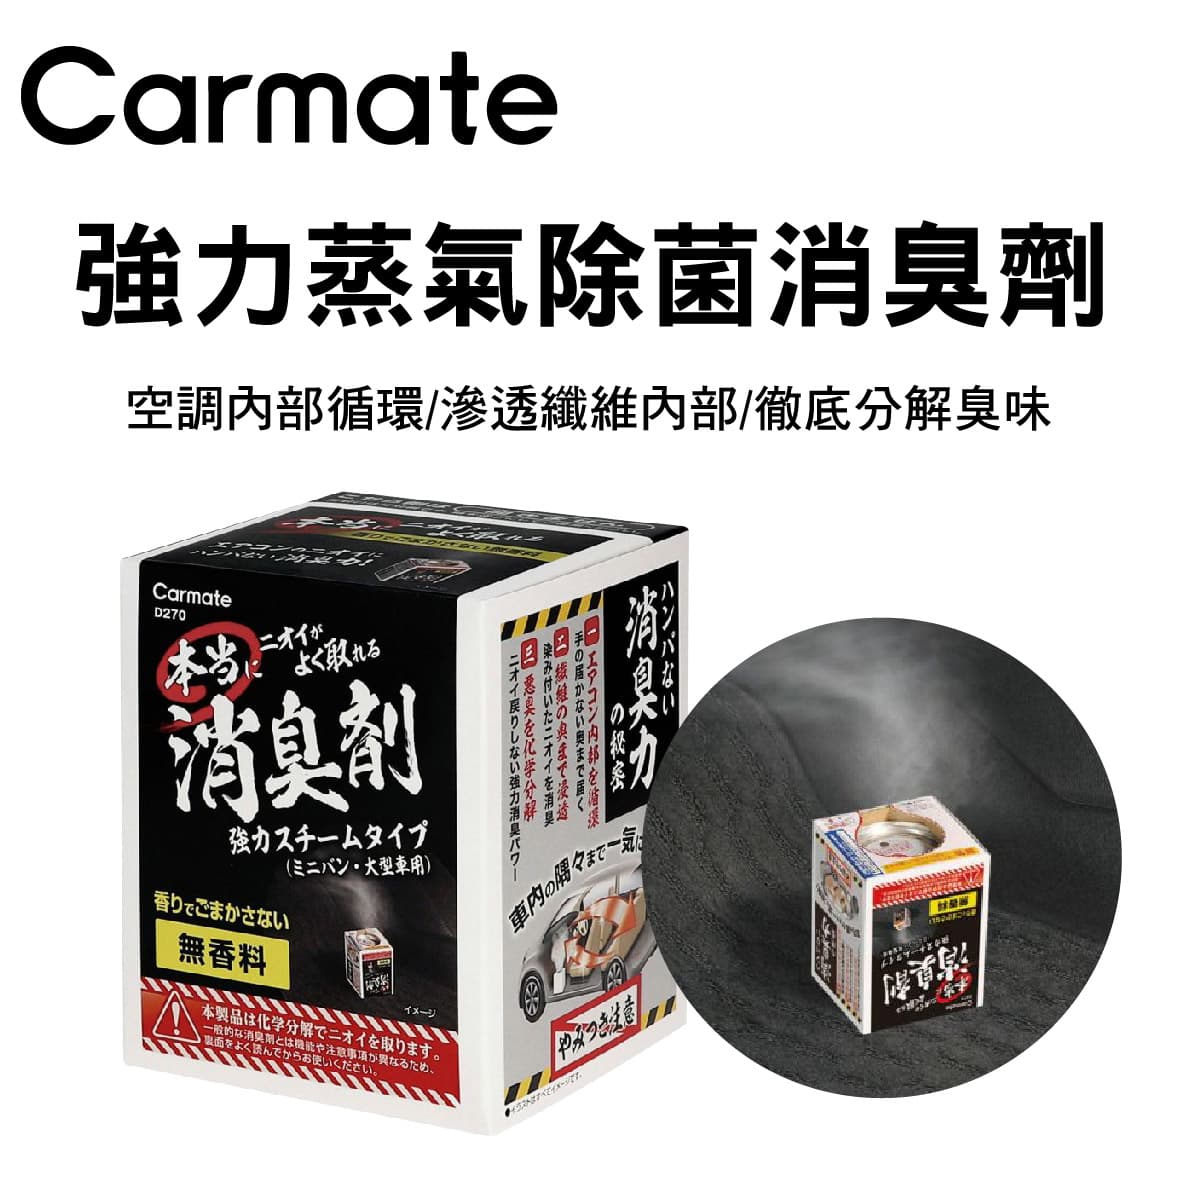 真便宜 CARMATE 強力蒸氣除菌消臭劑(190g/354g)